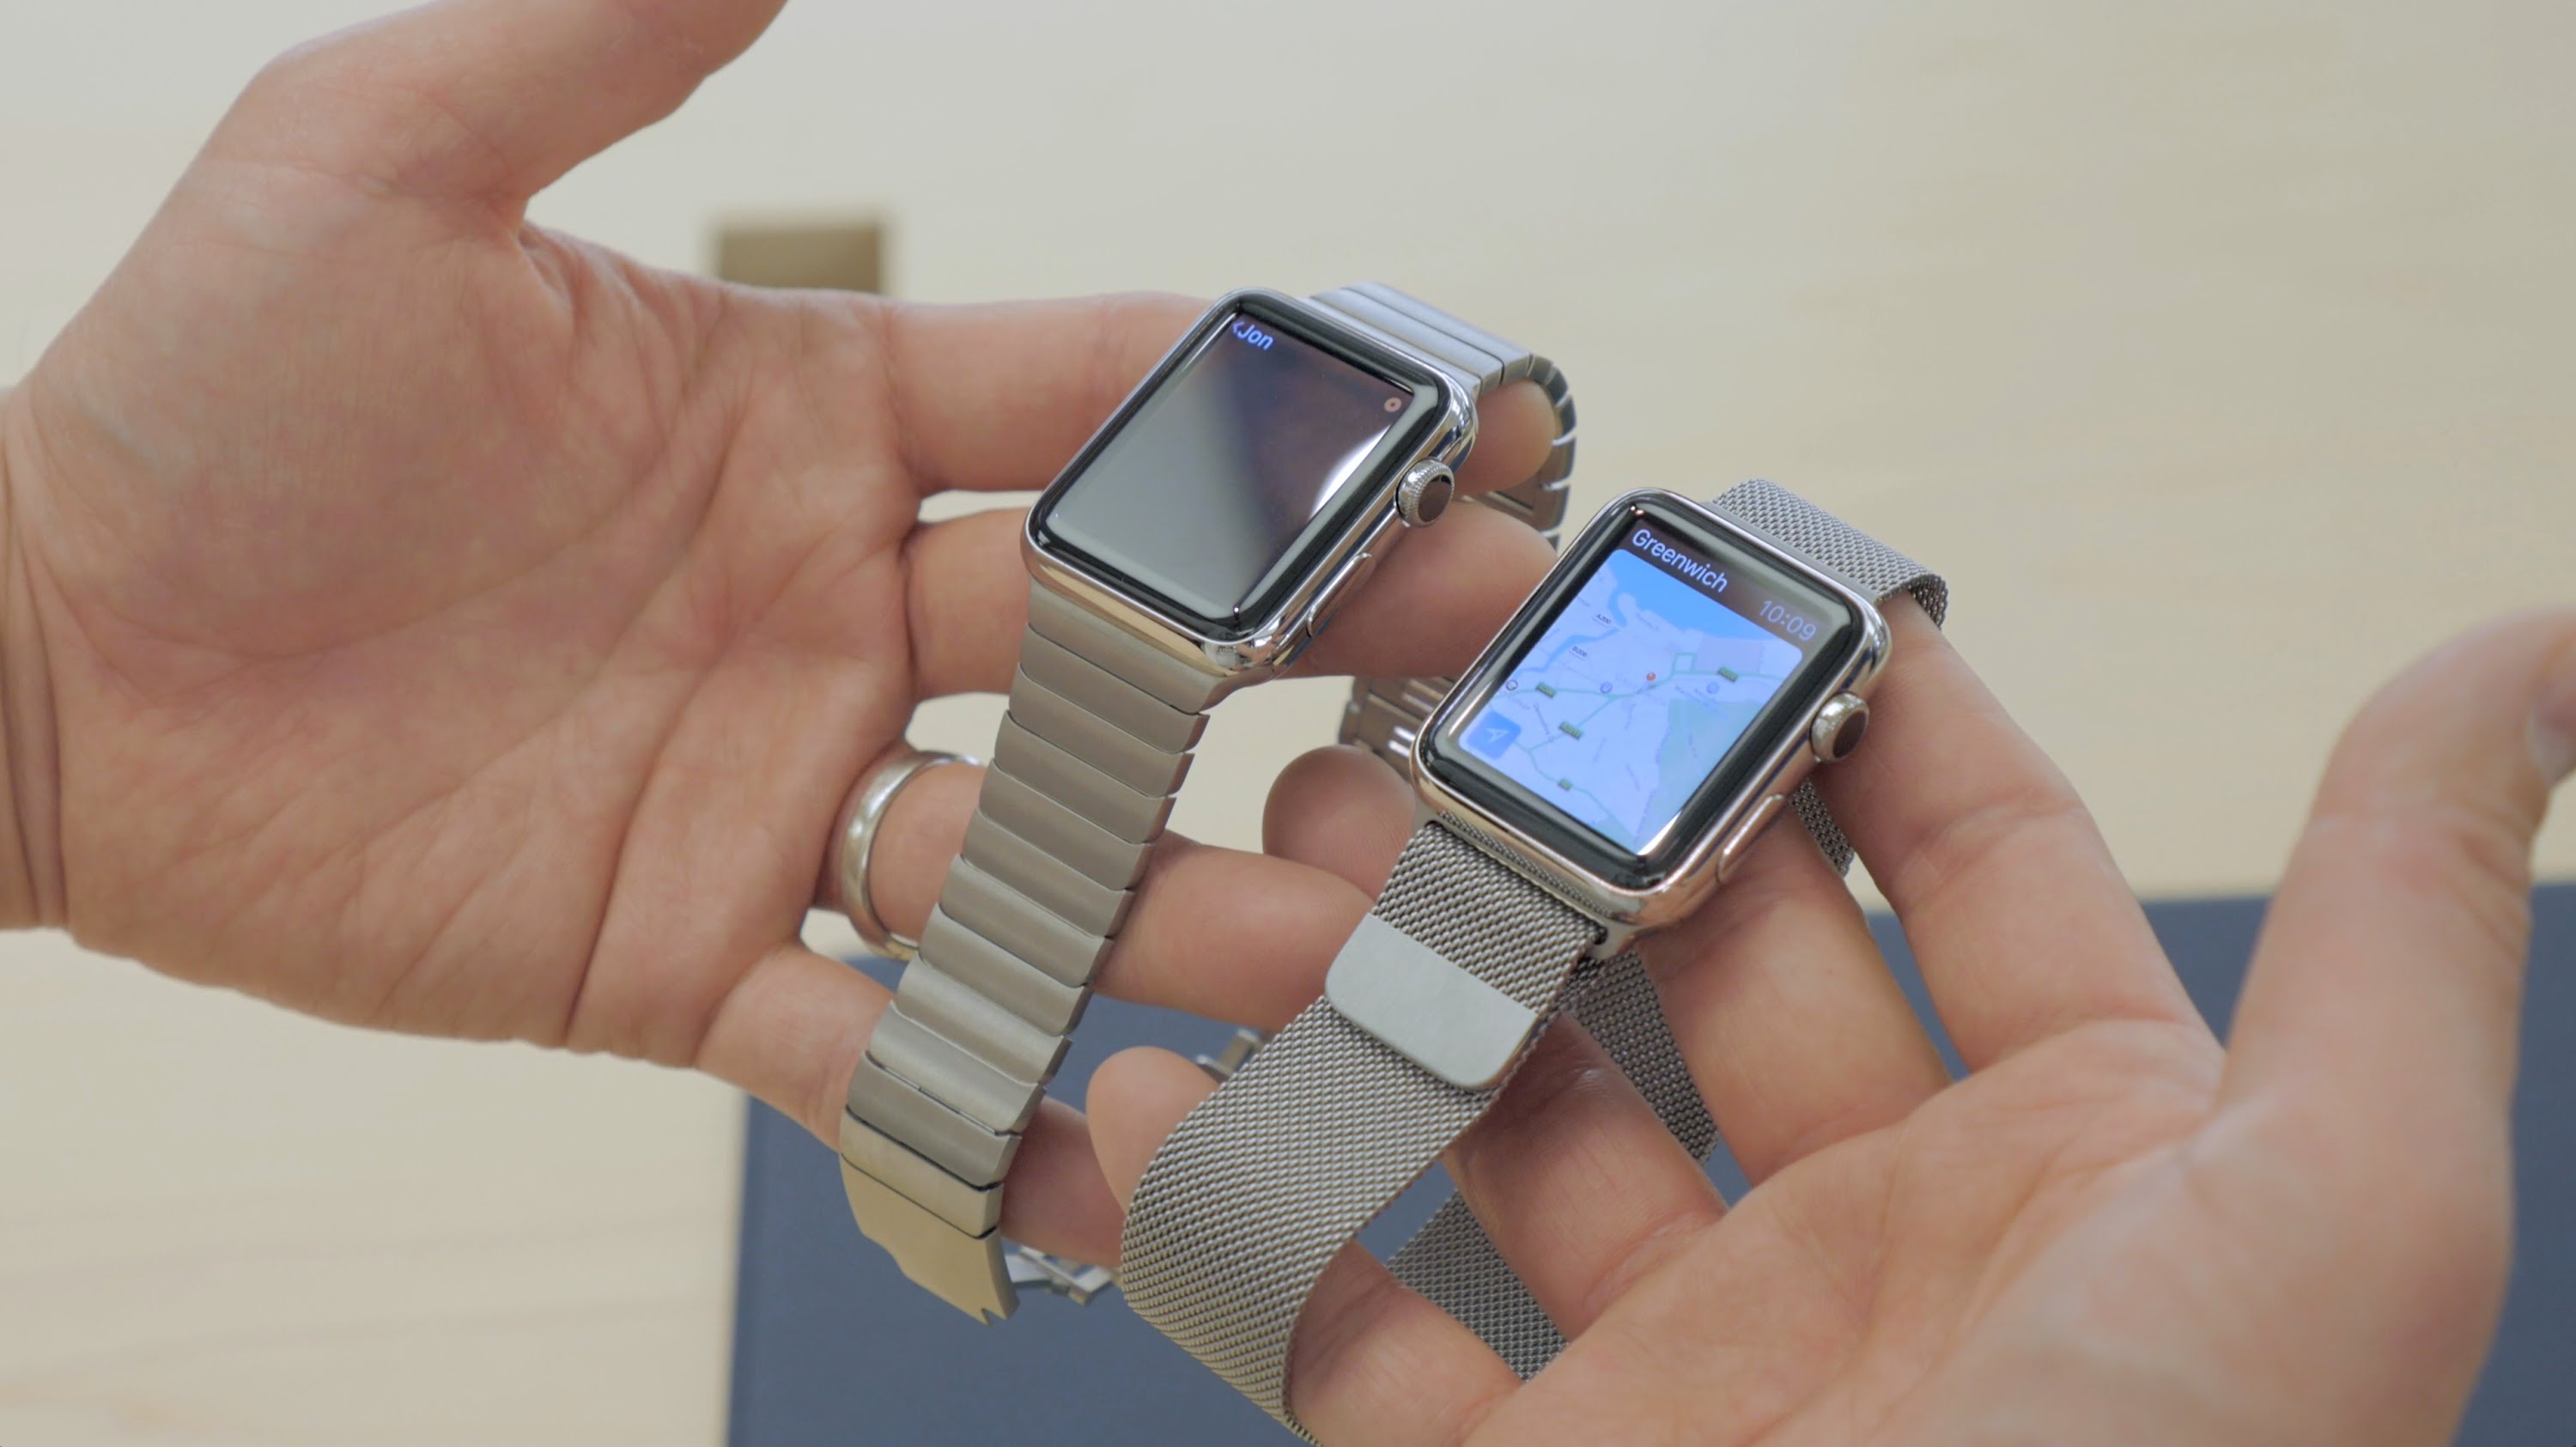 Apple watch 3 38mm. Apple watch Series 3 38mm. Apple watch 1 38 mm. Apple watch 38mm vs 42mm.